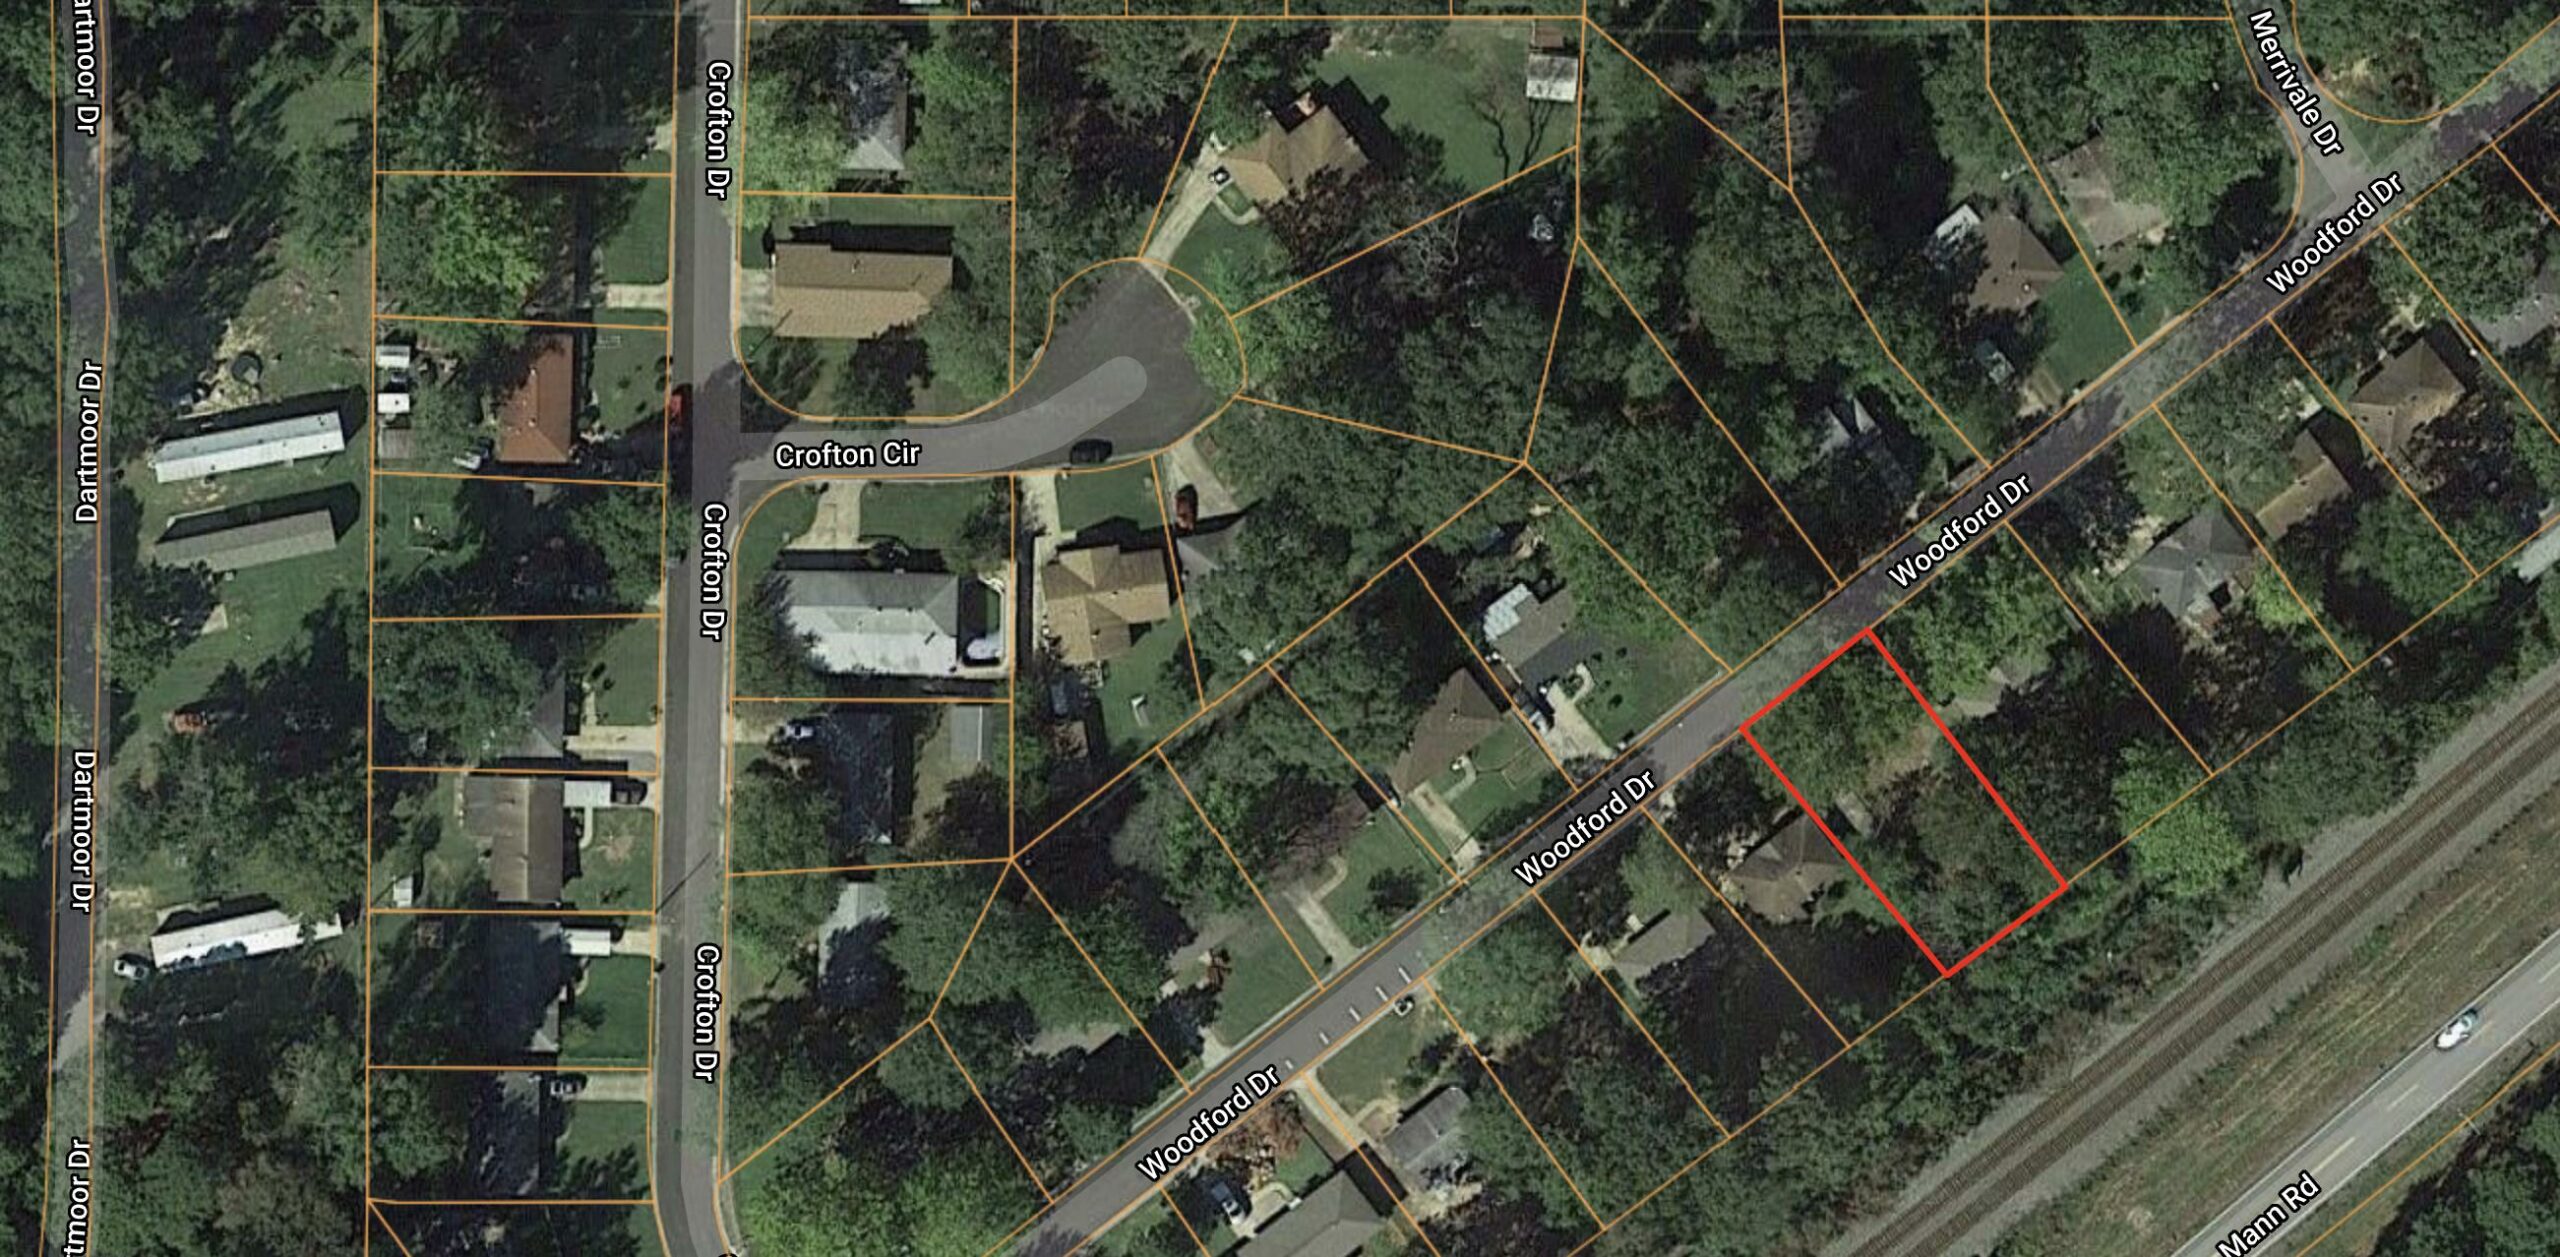 0.19 Acre Residential Lot in Little Rock, AR